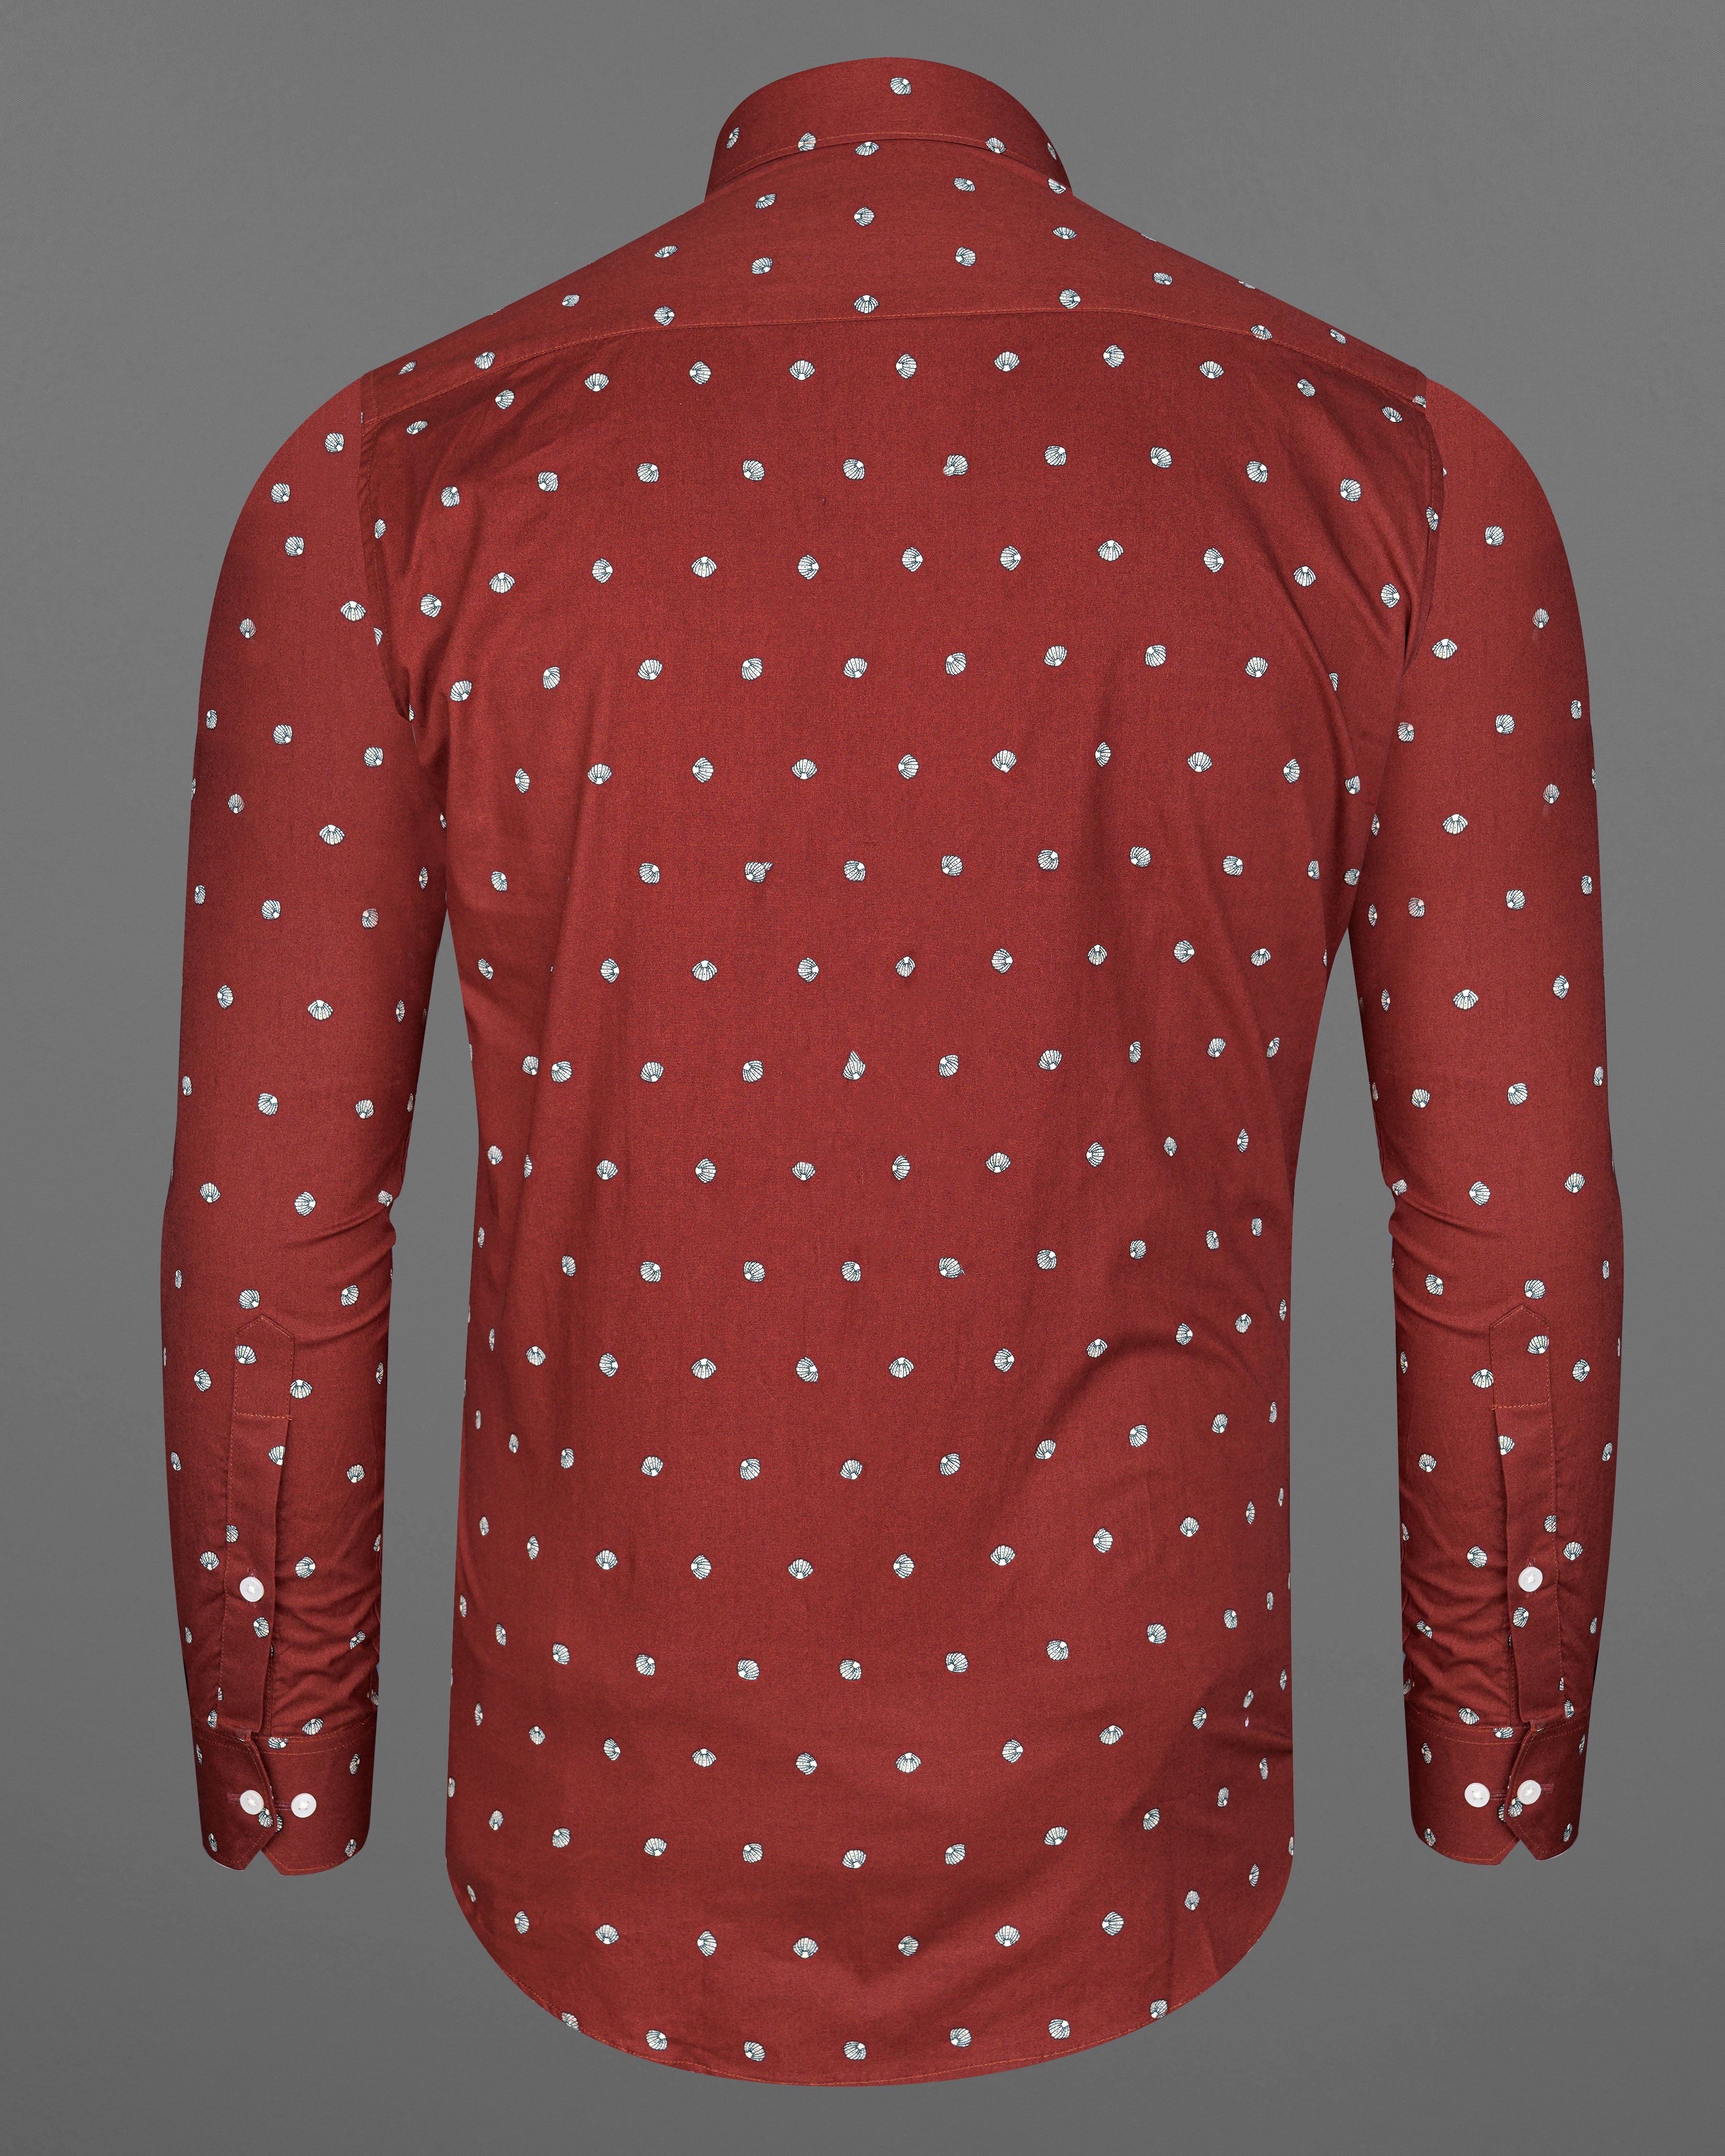 Sanguine Red Sea Shells Printed Premium Cotton Shirt 8244-38,8244-H-38,8244-39,8244-H-39,8244-40,8244-H-40,8244-42,8244-H-42,8244-44,8244-H-44,8244-46,8244-H-46,8244-48,8244-H-48,8244-50,8244-H-50,8244-52,8244-H-52